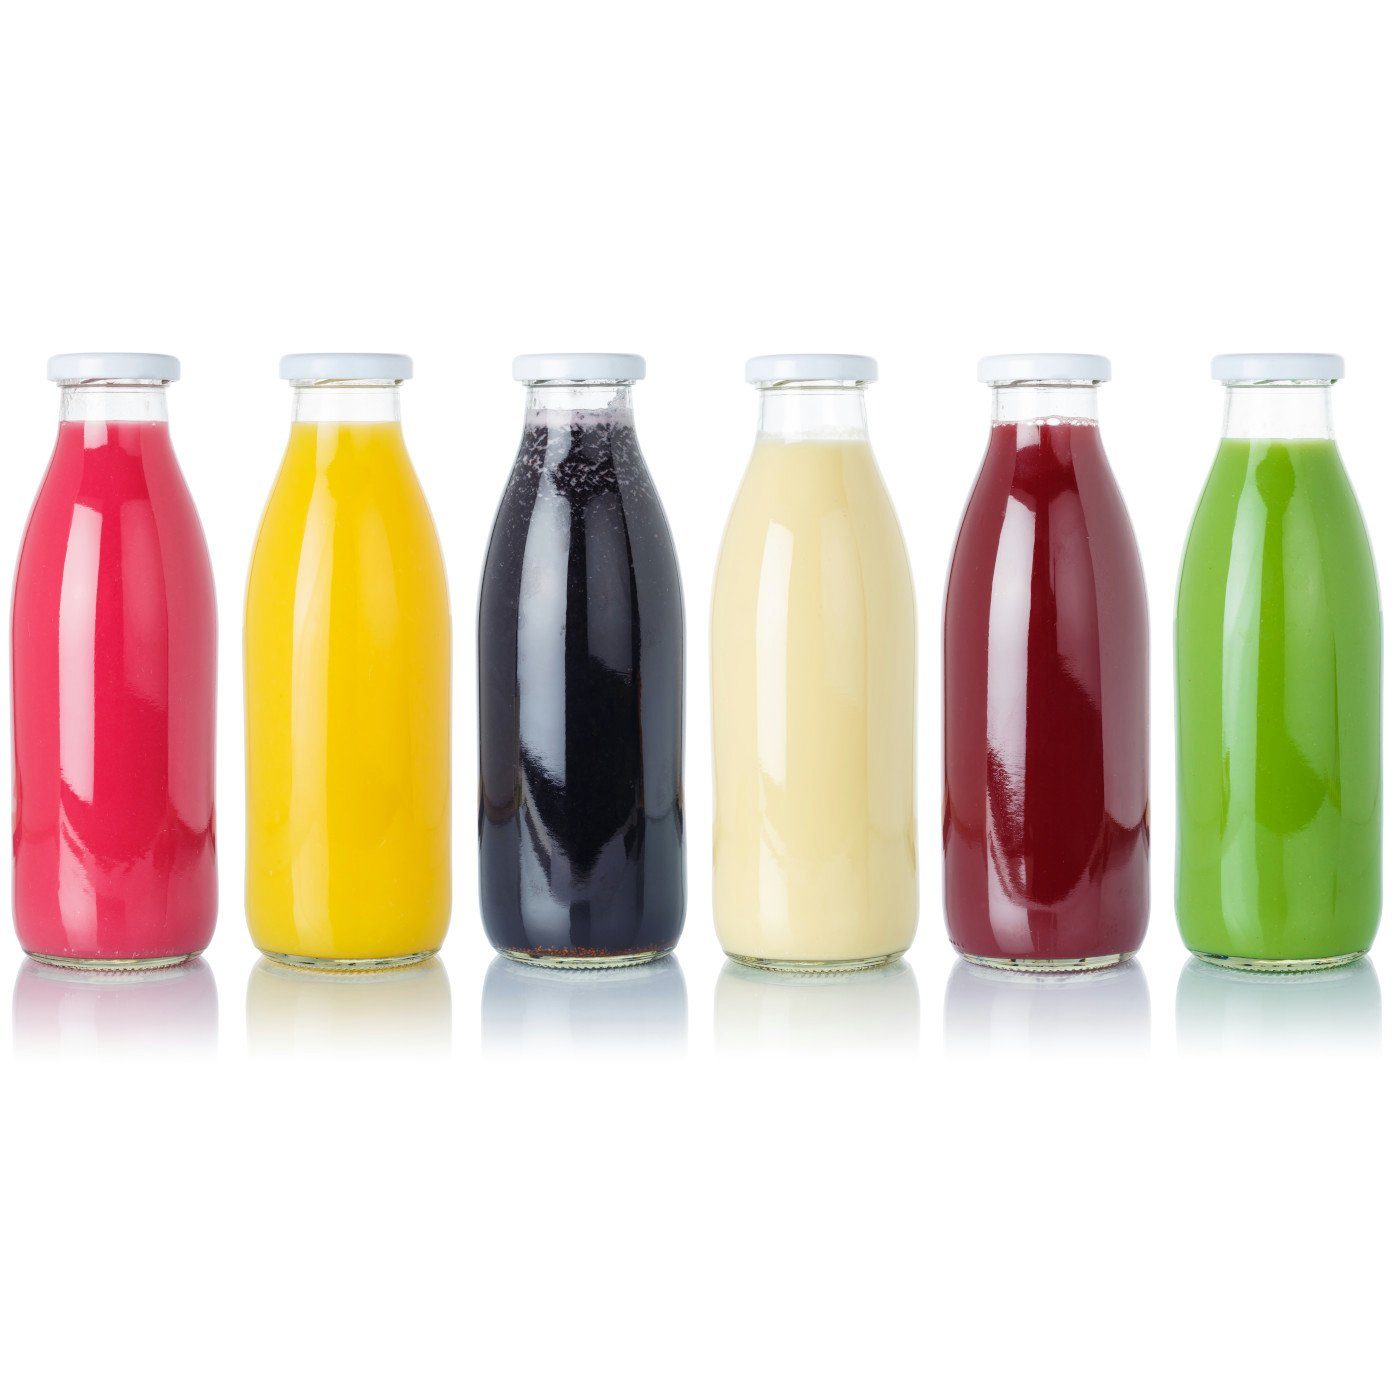 Glas, Saftflaschen 1,0 Set, Flasche mit Große Schraub-Deckel - gouveo Trinkflasche 6er aus ml 1000 silberfarben l